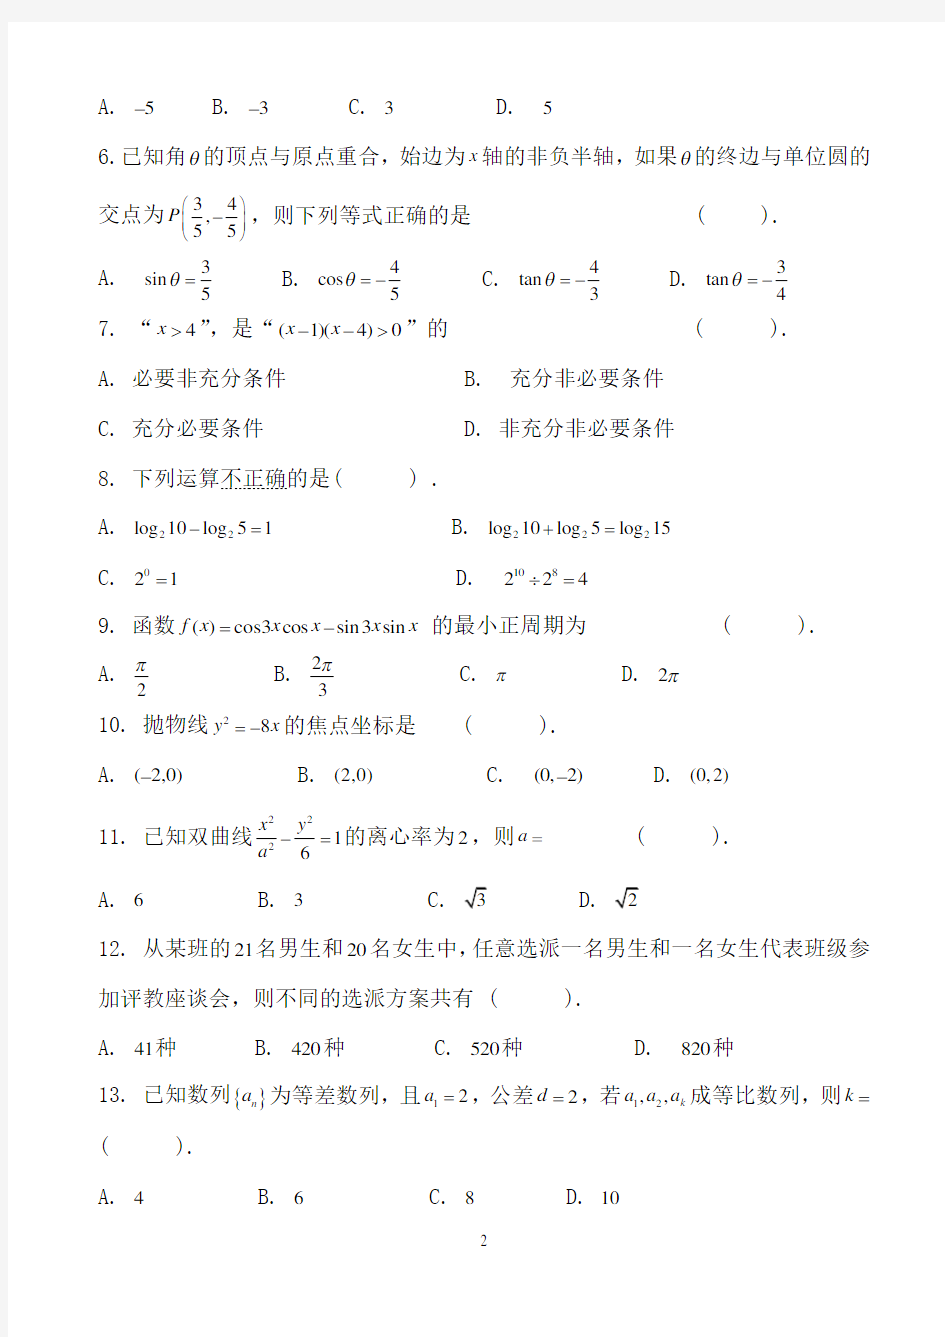 2017年广东省3+证书高职高考数学试卷(真题)和答案